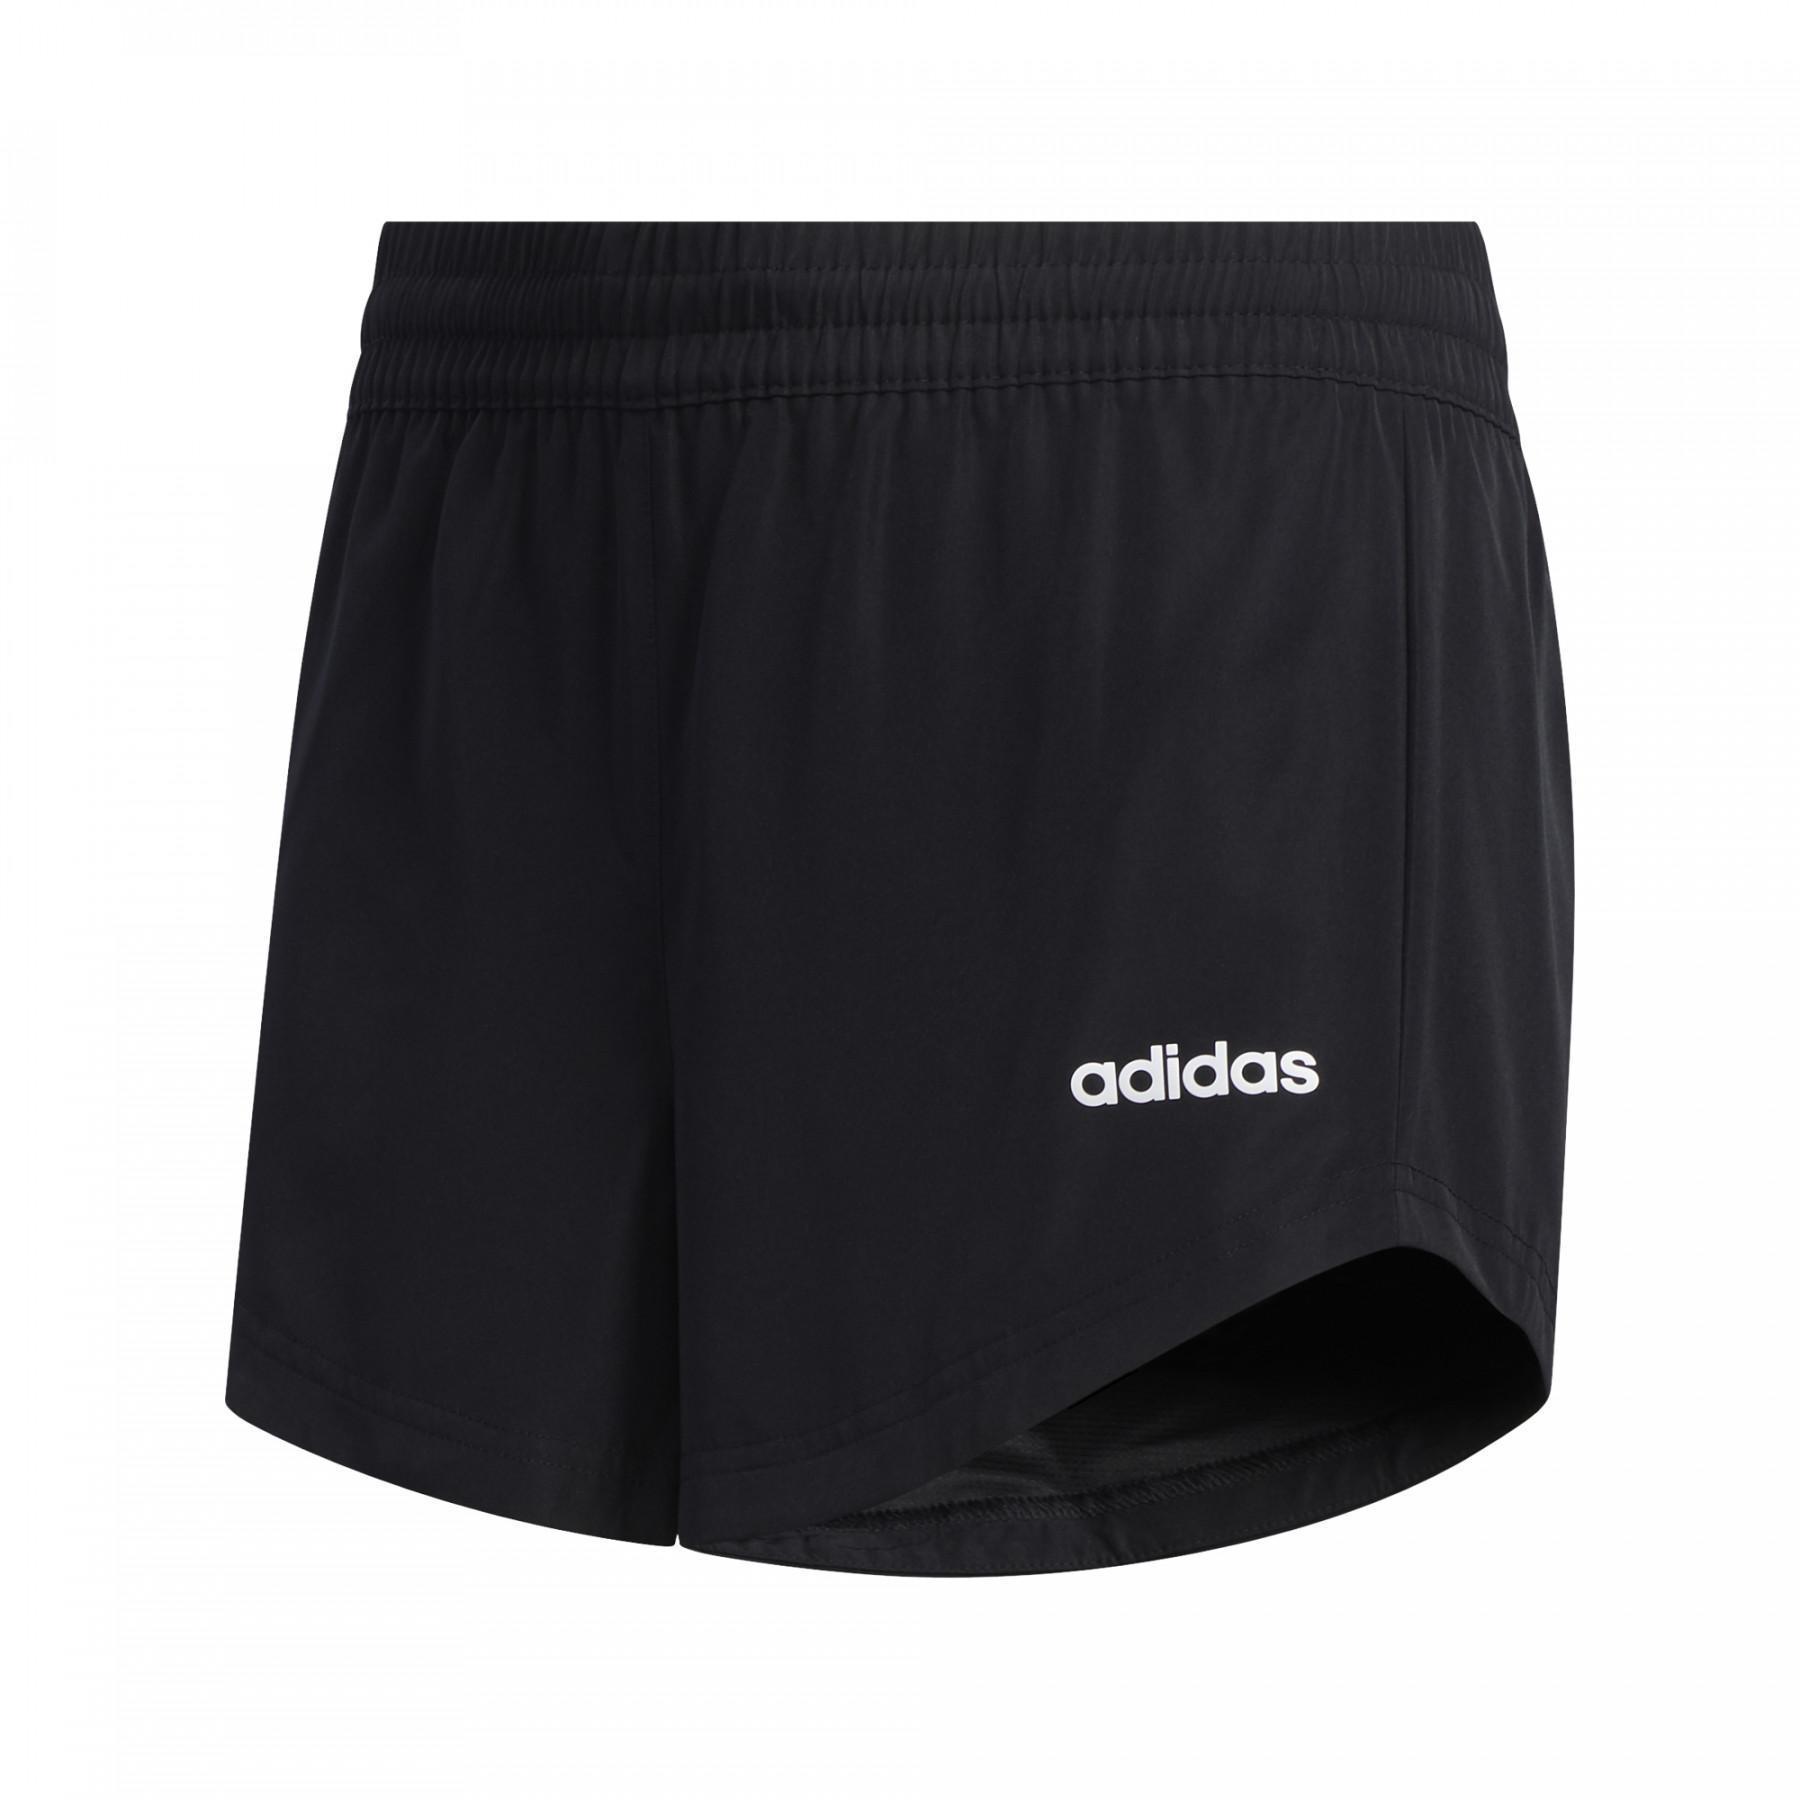 Kinder shorts adidas Basic